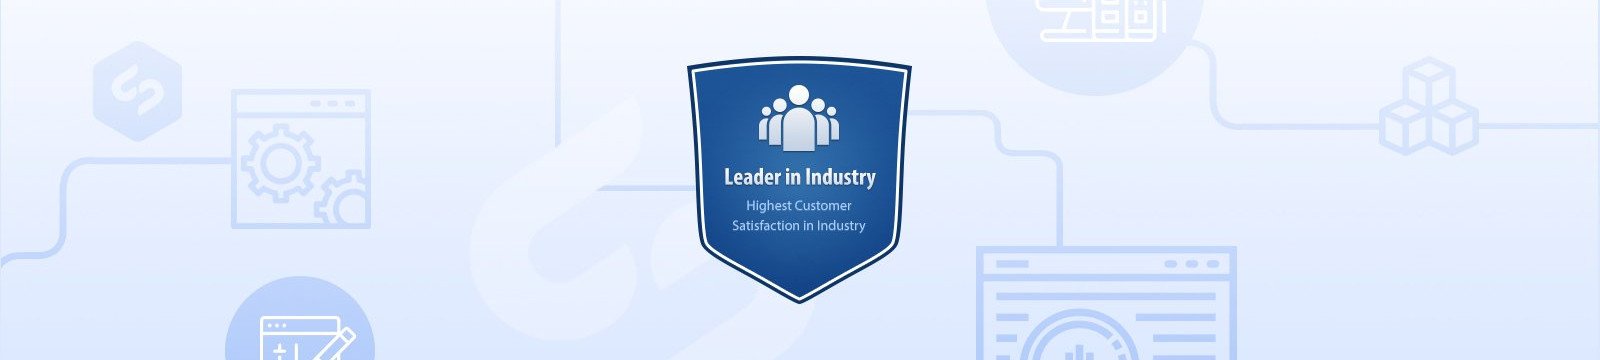 industry leader award header